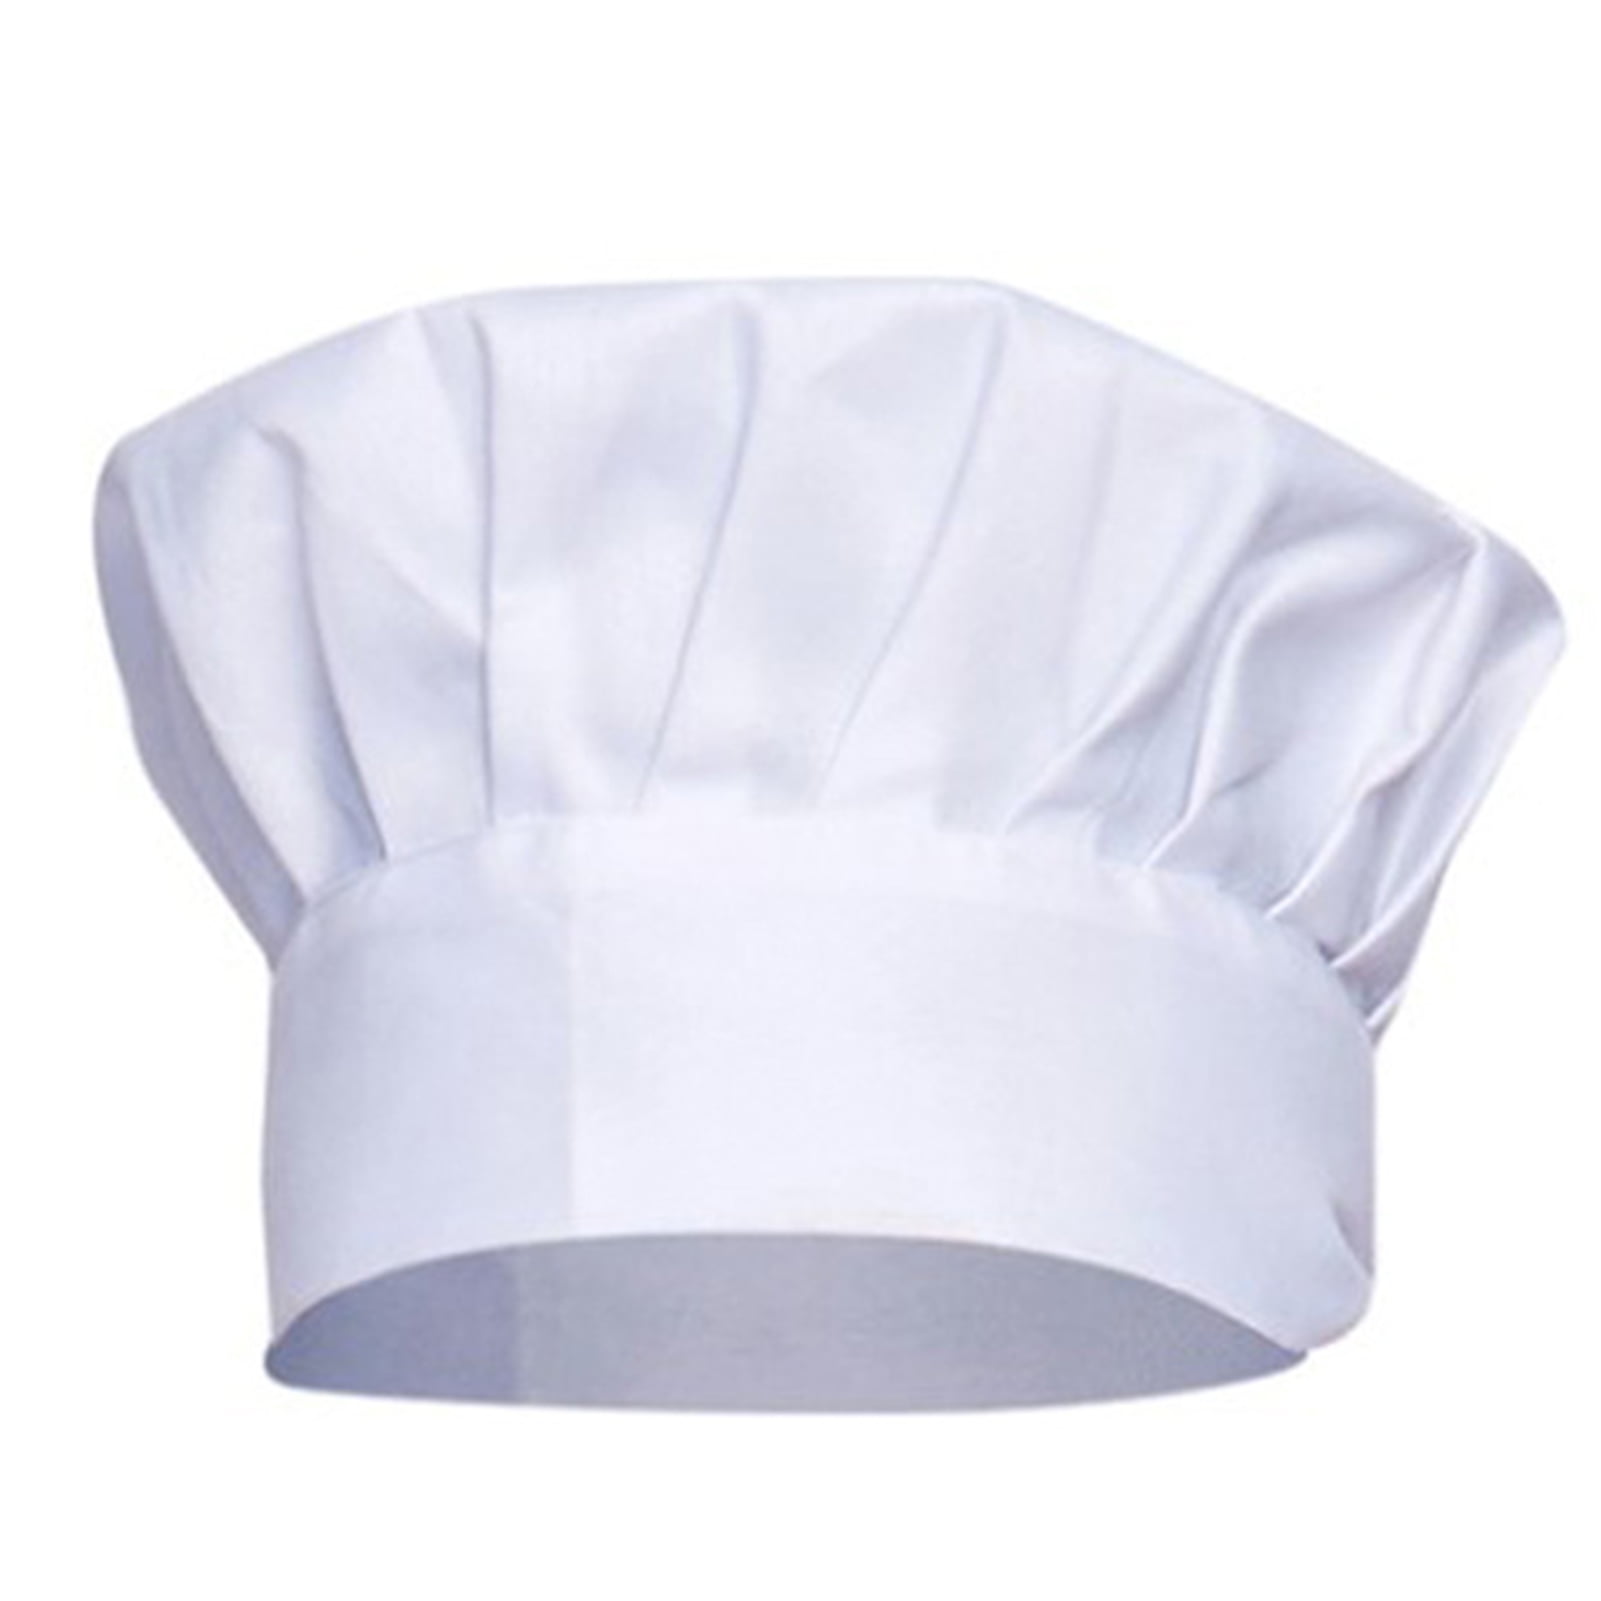 Chef hat kitchen hotel work cap mushroom cap chef work hat Unisex 